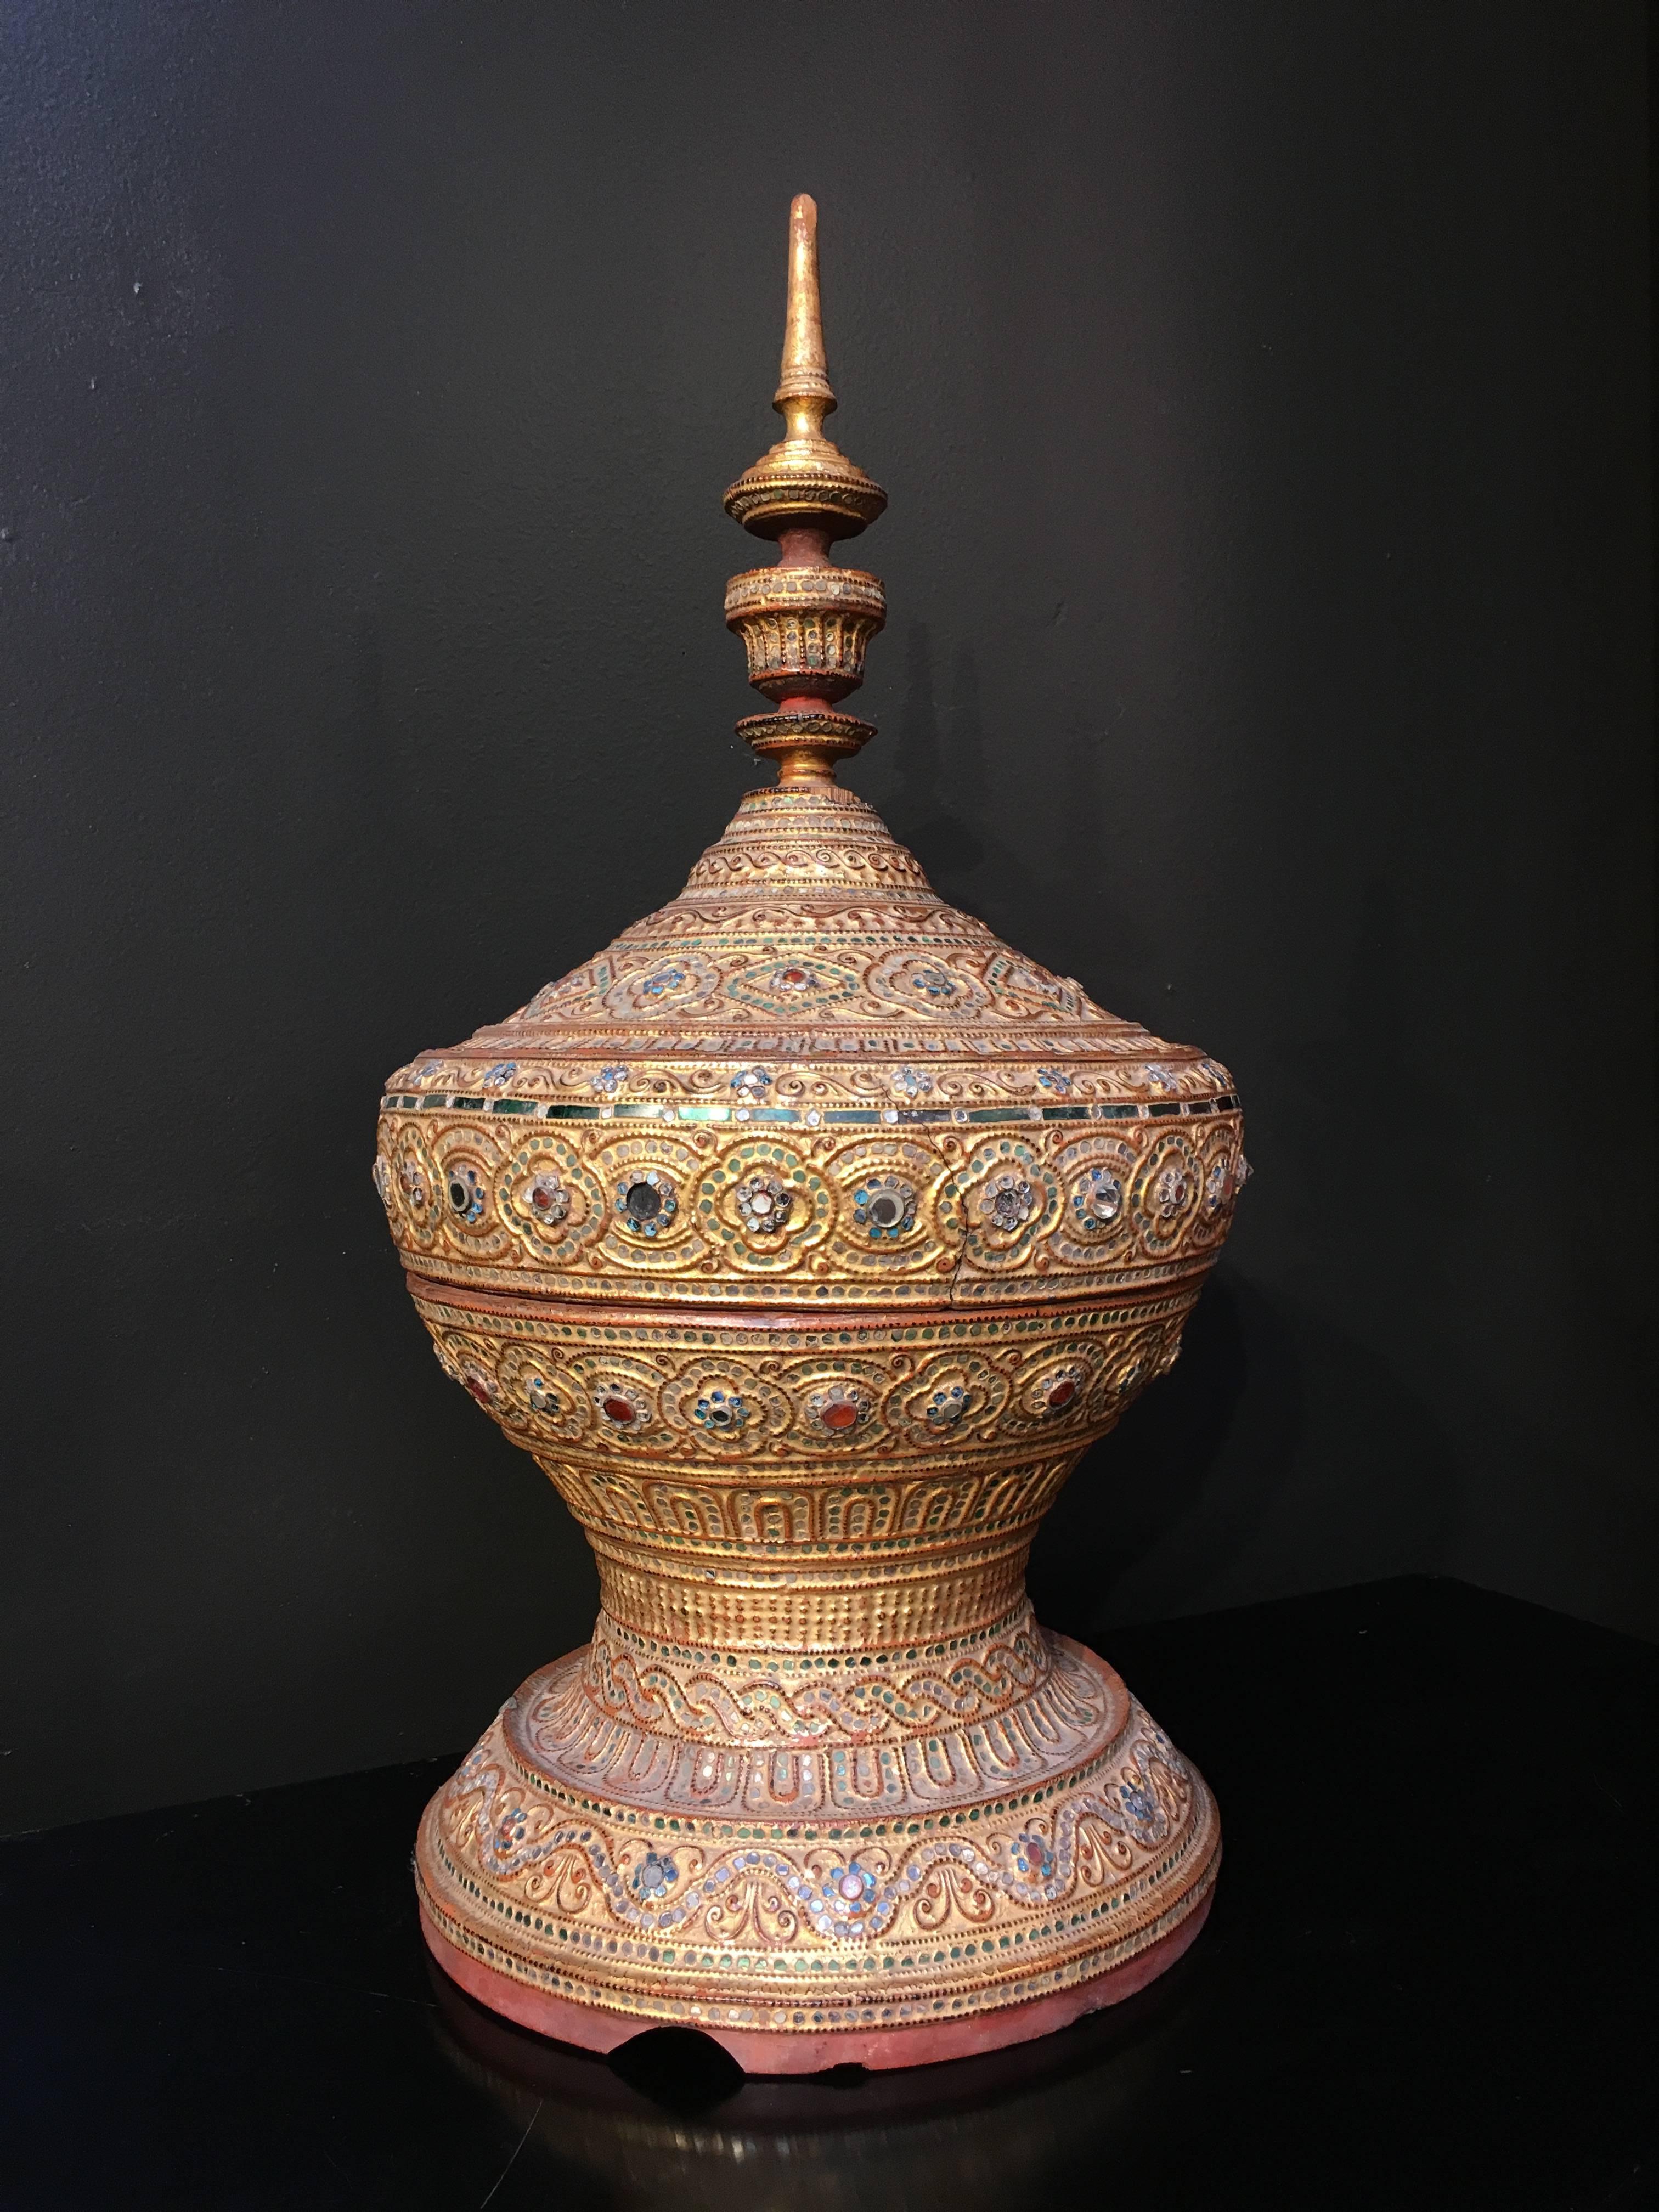 Ein prächtiges birmanisches Opfergefäß aus der Mandalay-Periode, genannt hsun-ok, frühes 20. Jahrhundert. 
Die Form erinnert an einen Stupa, ein buddhistisches Baudenkmal zu Ehren einer heiligen Stätte.
Dieses aus Bambus gefertigte, mit Lack